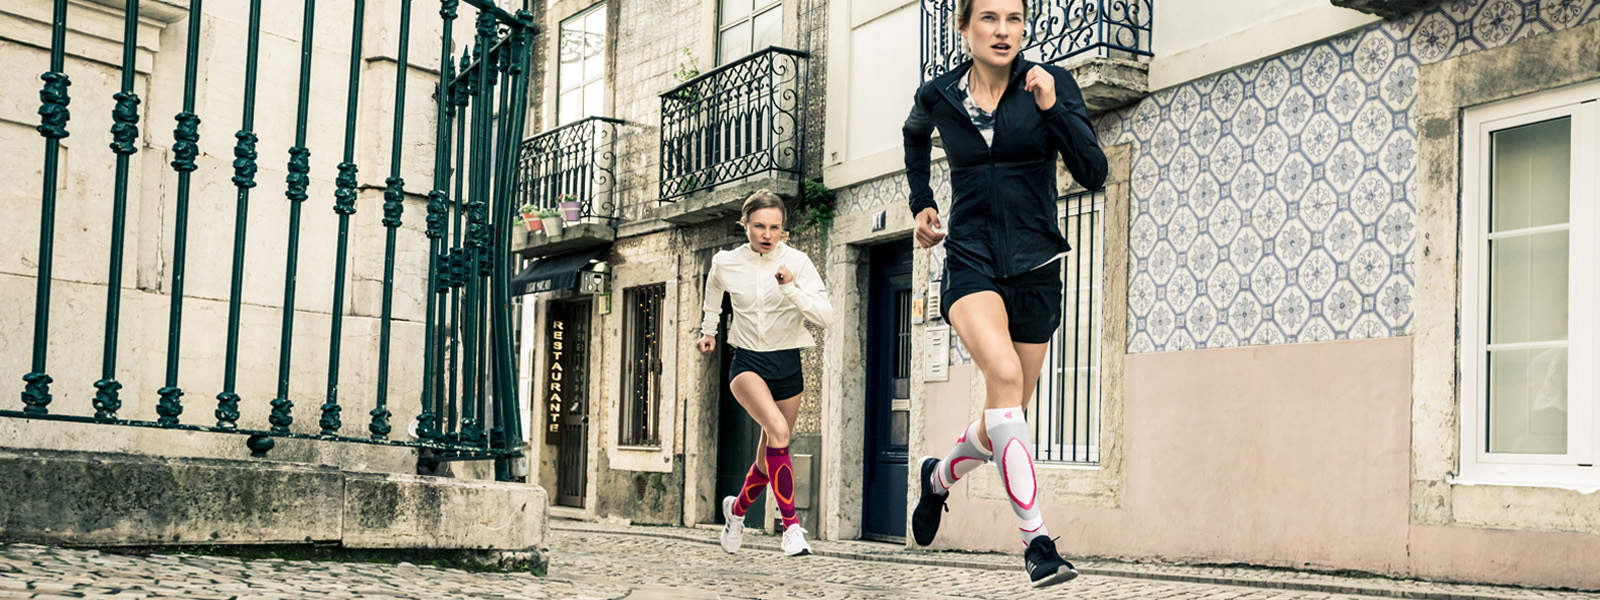 Zwei Frauen rennen energisch durch eine Altstadtstraße mit kleinen Balkonen